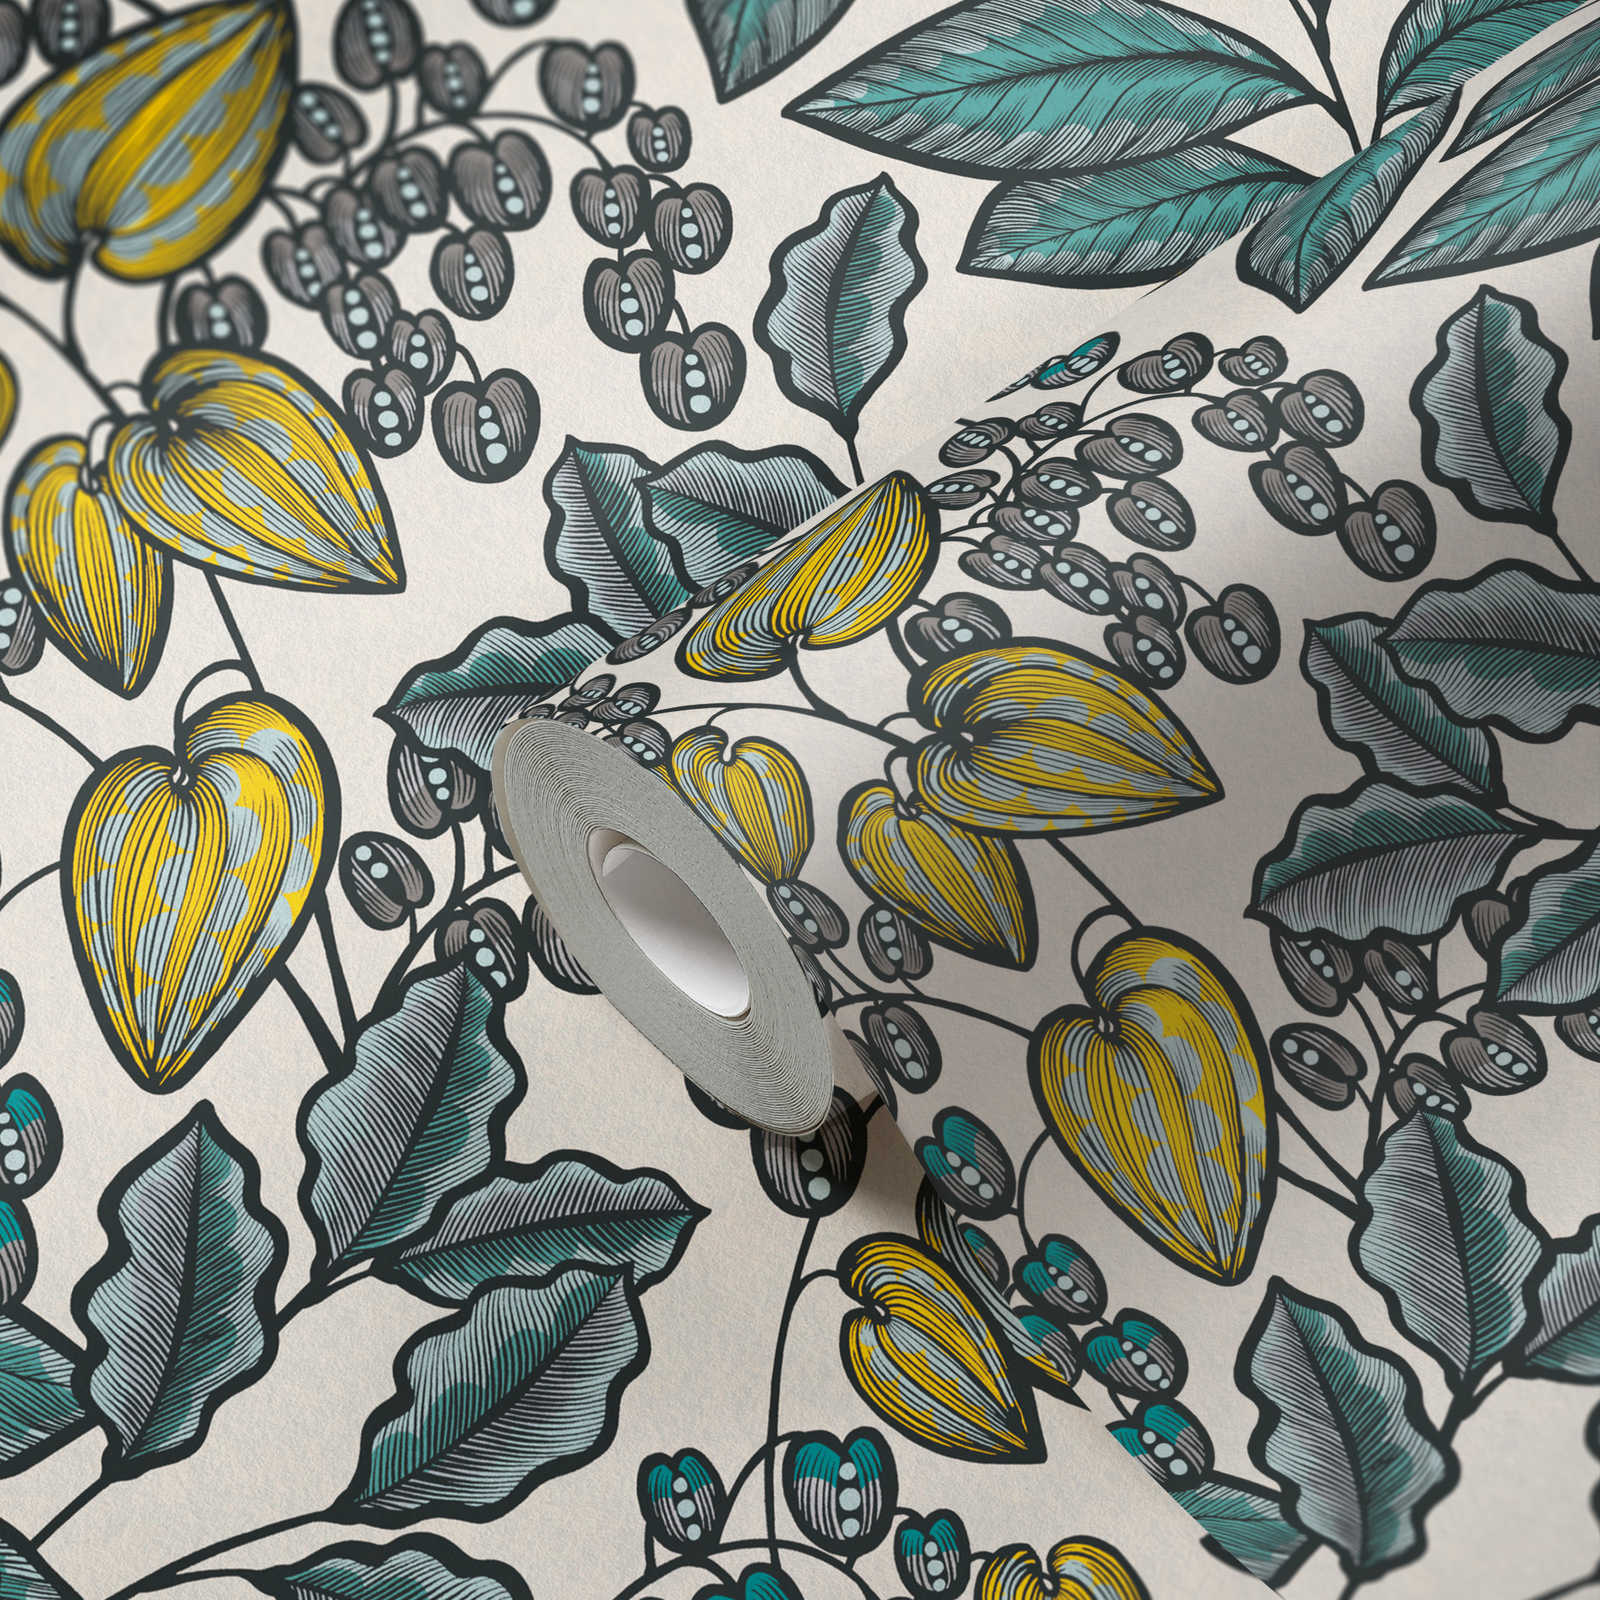             Papel pintado no tejido con diseño de hojas de aspecto escandinavo - azul, blanco, amarillo
        